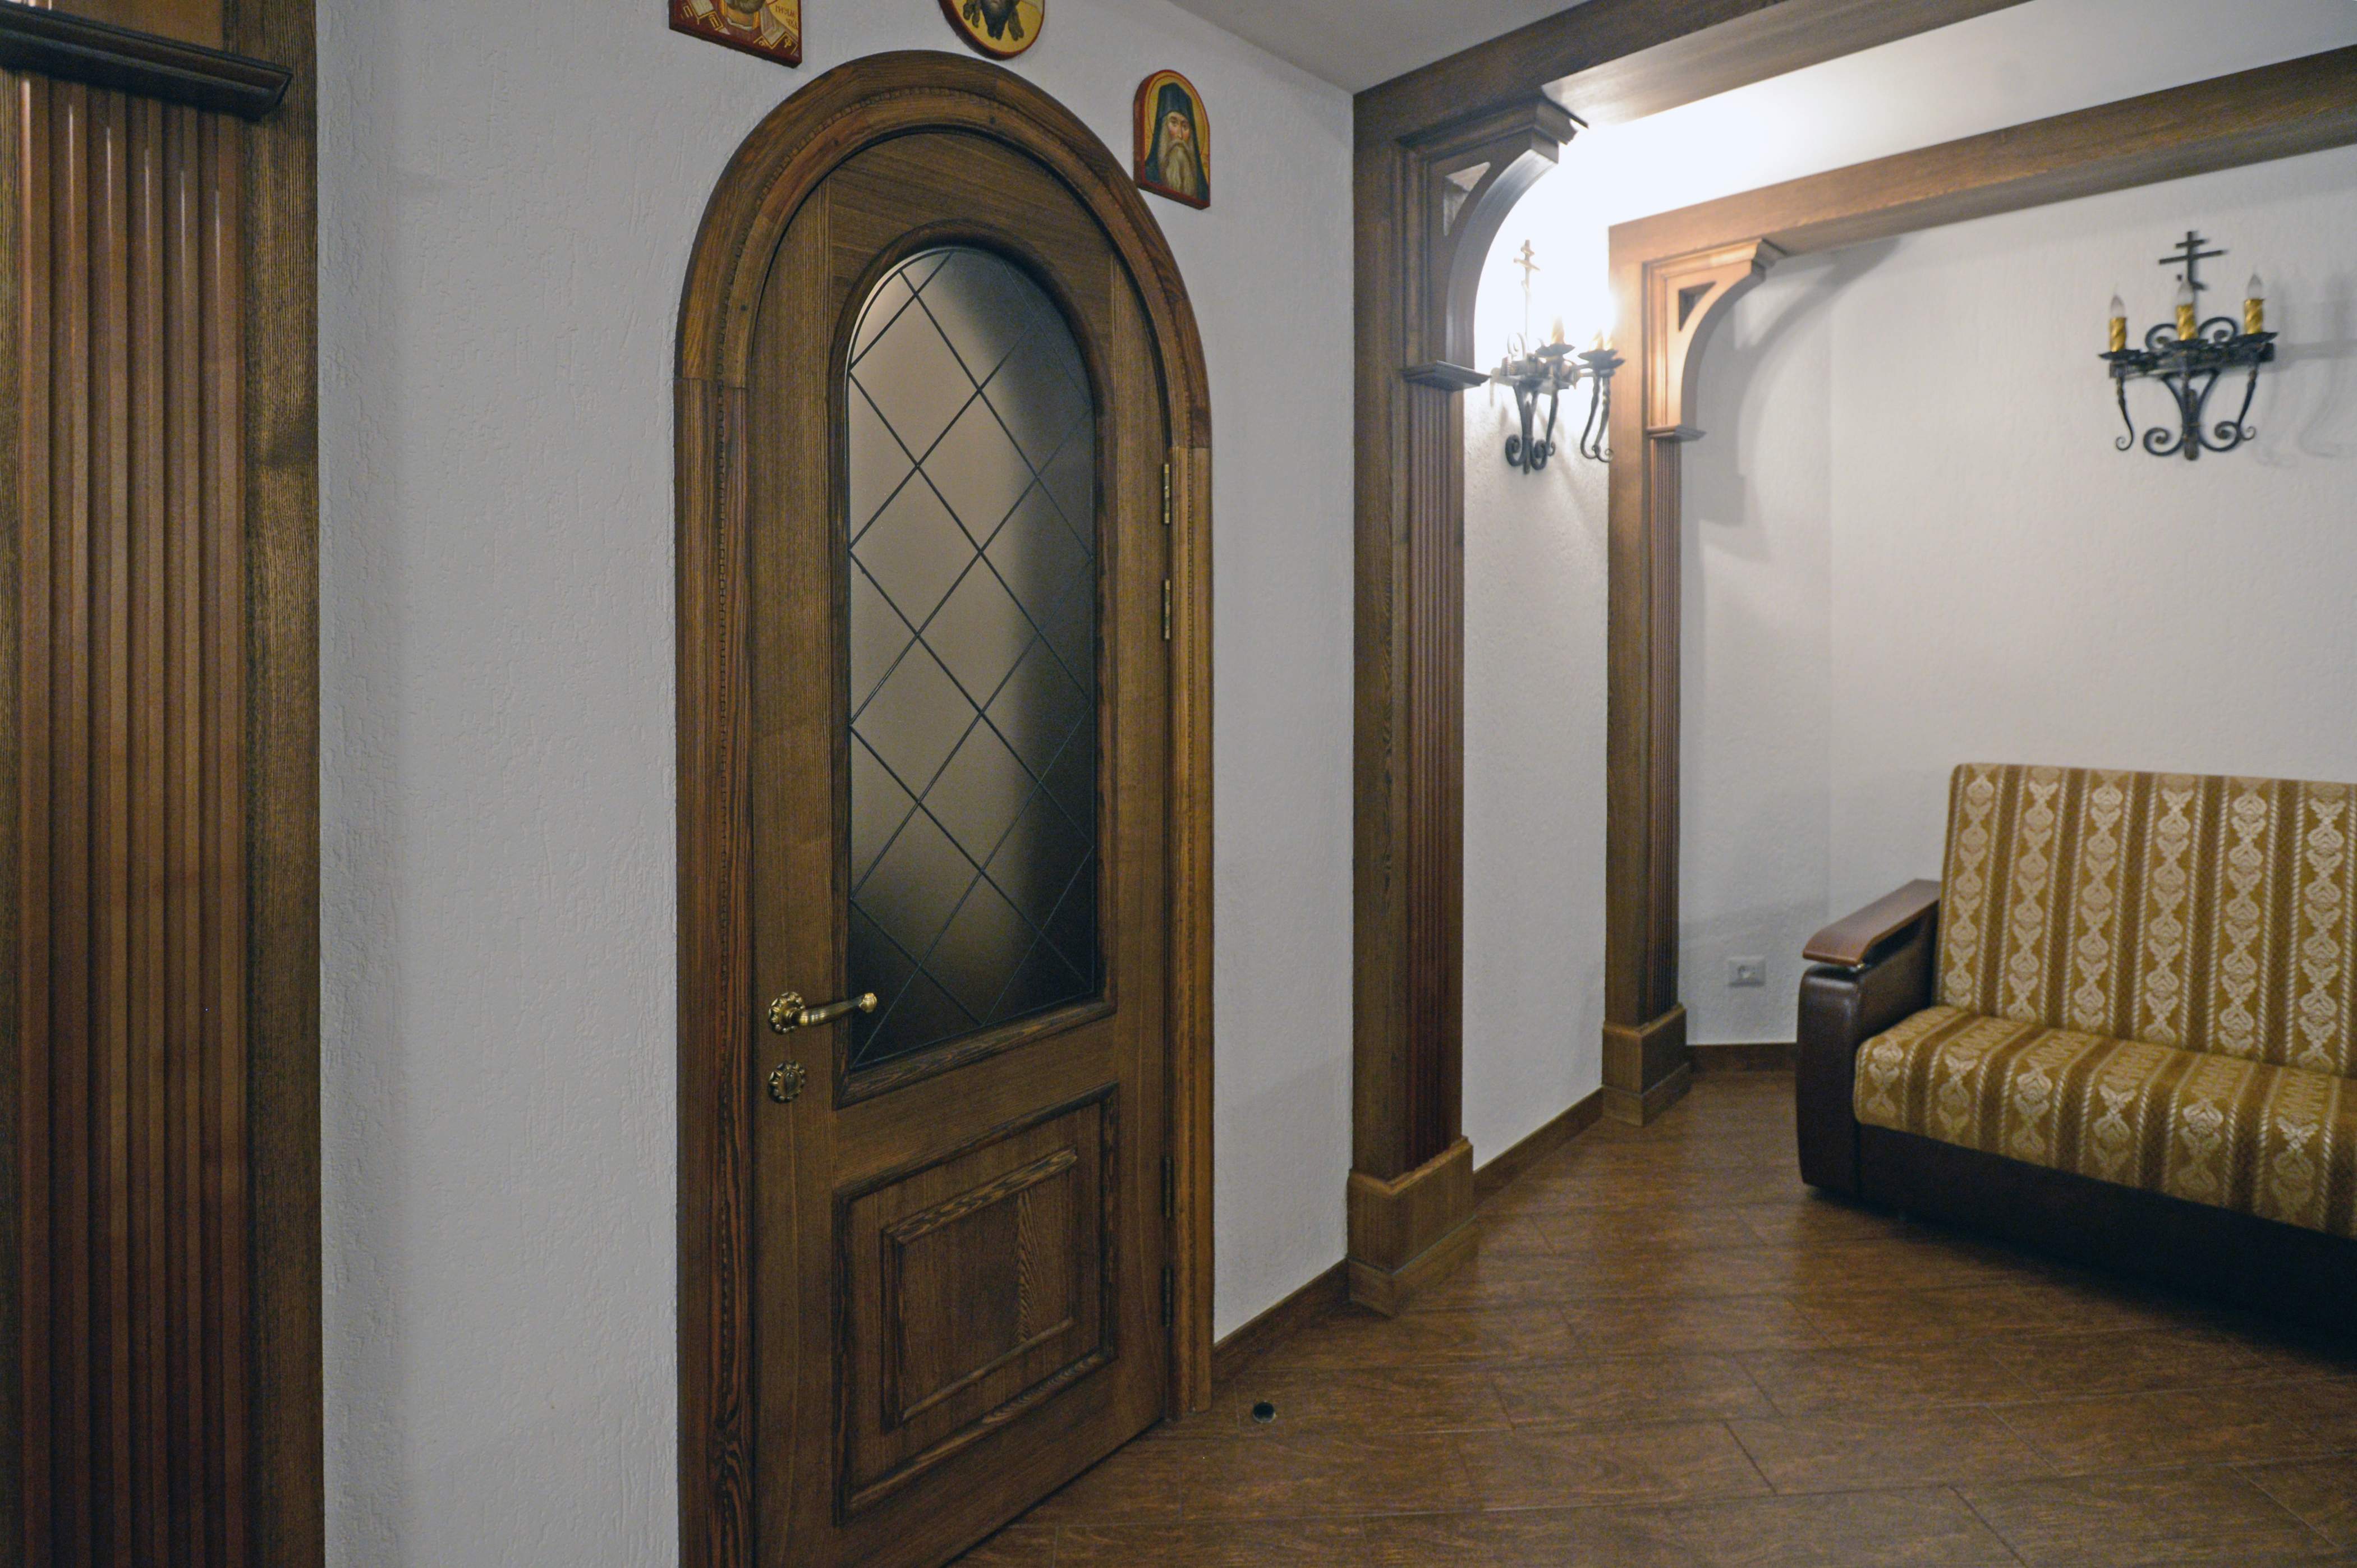 Двери деревянные, дверь филенчатая, двери в храм, двери в церковь, двери из массива, арочная дверь, дверь с витражом, массив, деревянные колонны, деревянные пилястры, каннелюры, деревянный кронштейн, деревянная балка